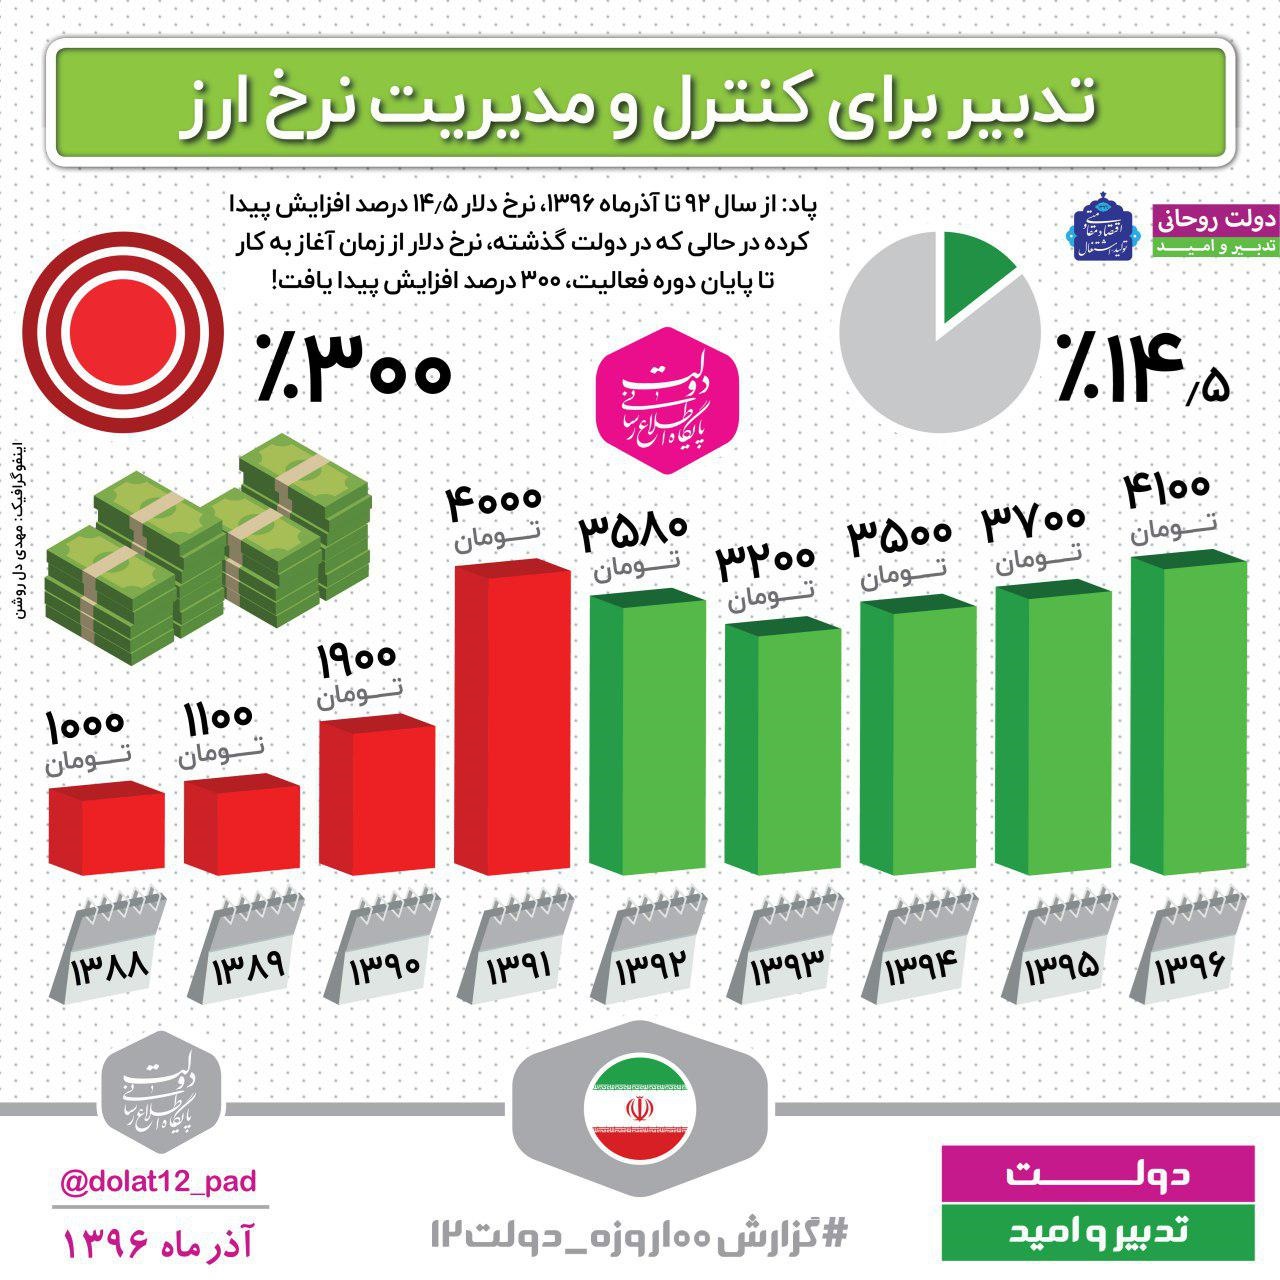 نرخ ارز در دولت روحانی چقدر نوسان داشته است؟